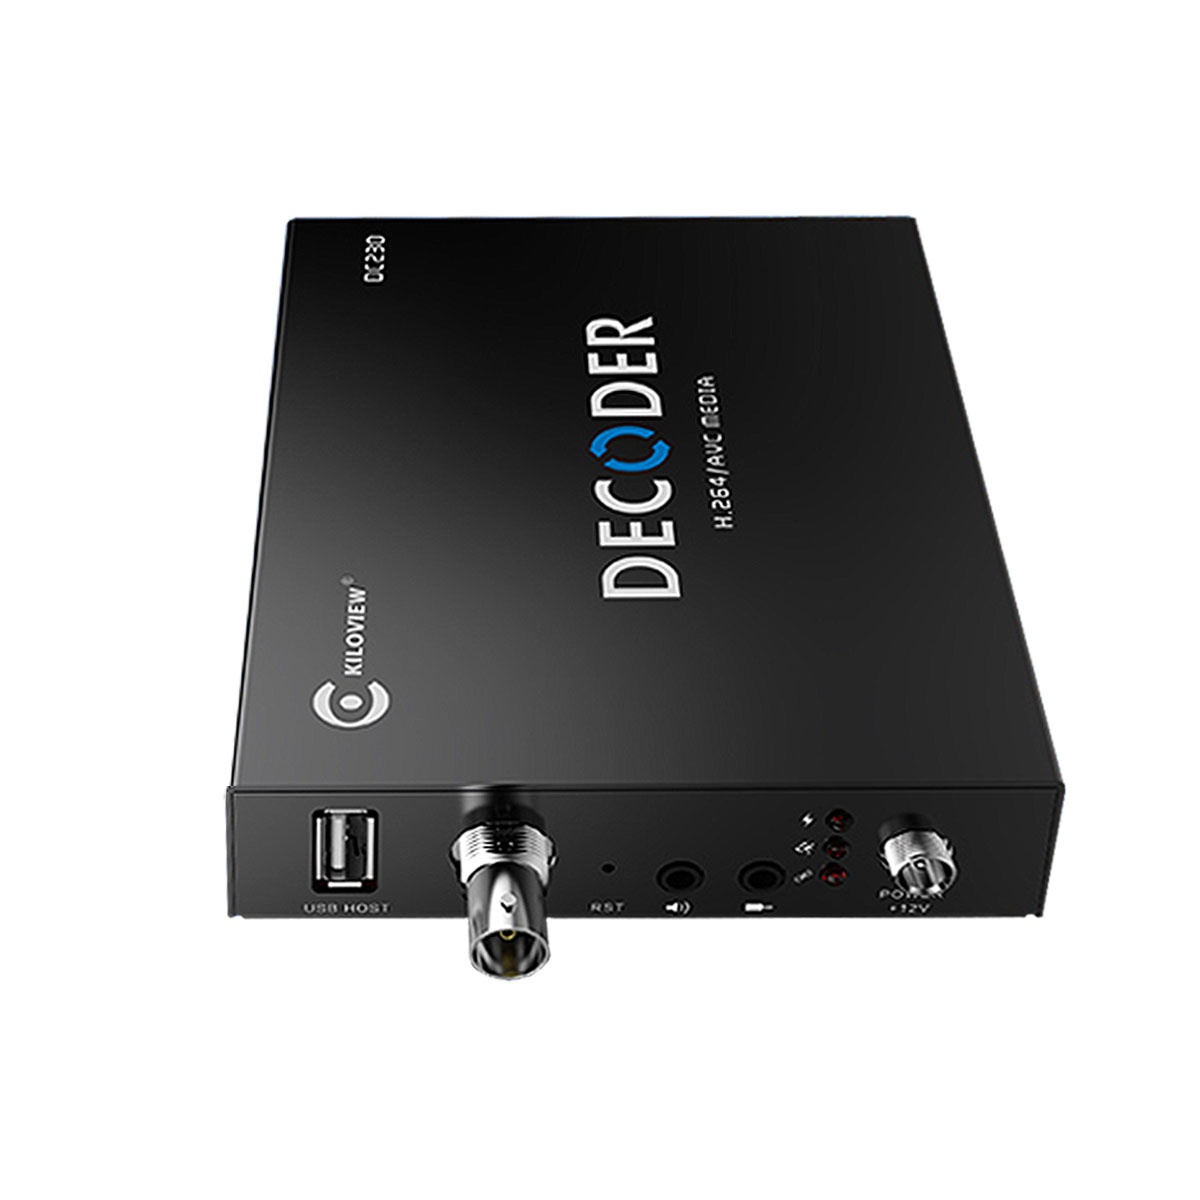 Kiloview DC230 4-kanálový H.264 video dekóder do SDI a DVI-I (HDMI/VGA) s multiview